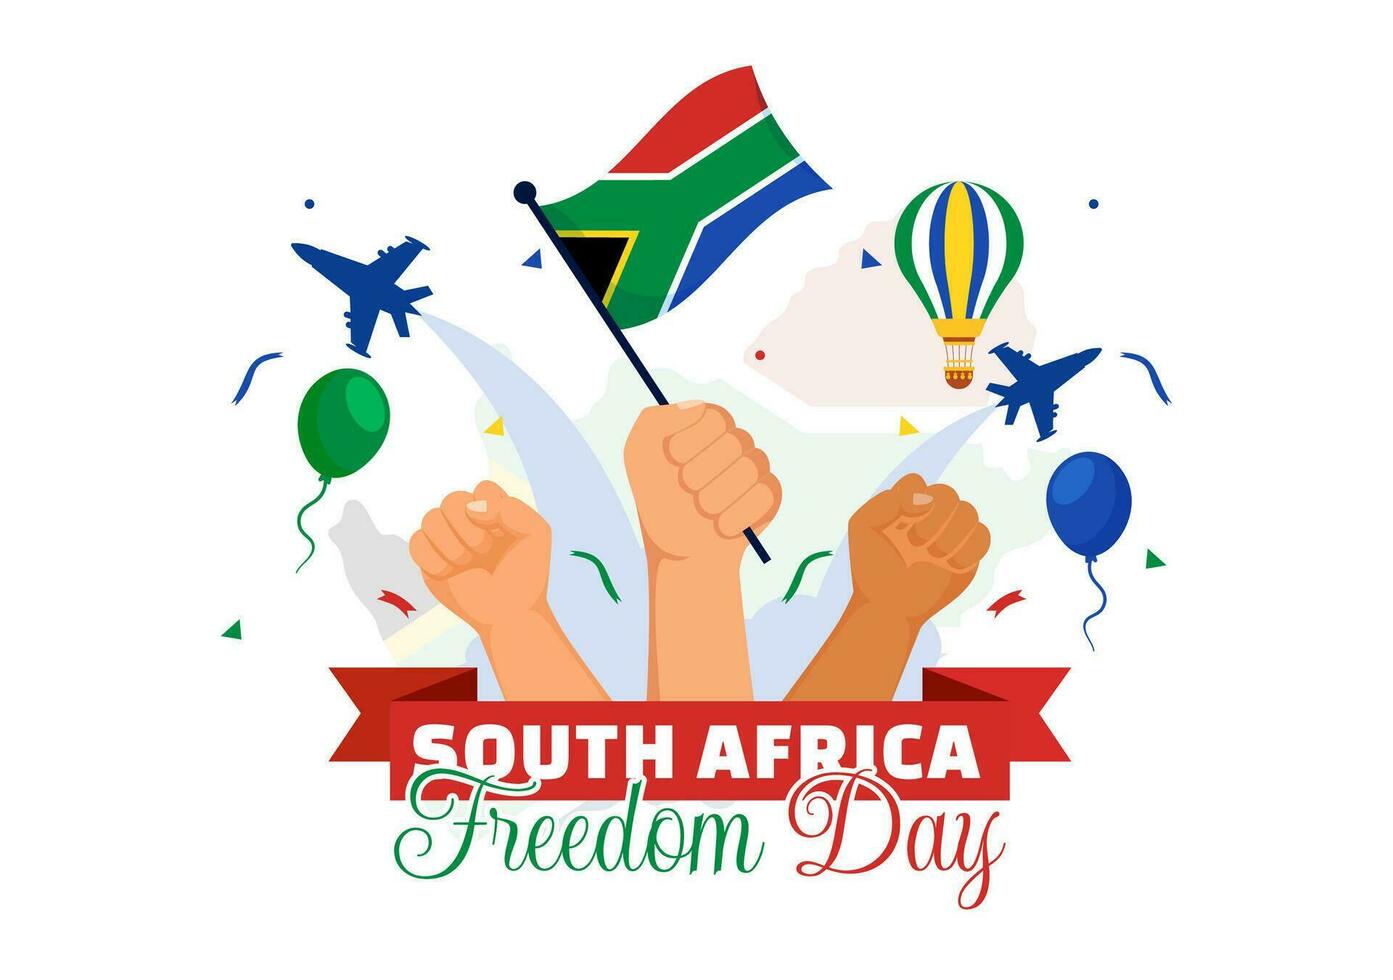 glücklich Süd Afrika Freiheit Tag Vektor Illustration auf 27 April mit winken Flagge und Band im National Urlaub eben Karikatur Hintergrund Design